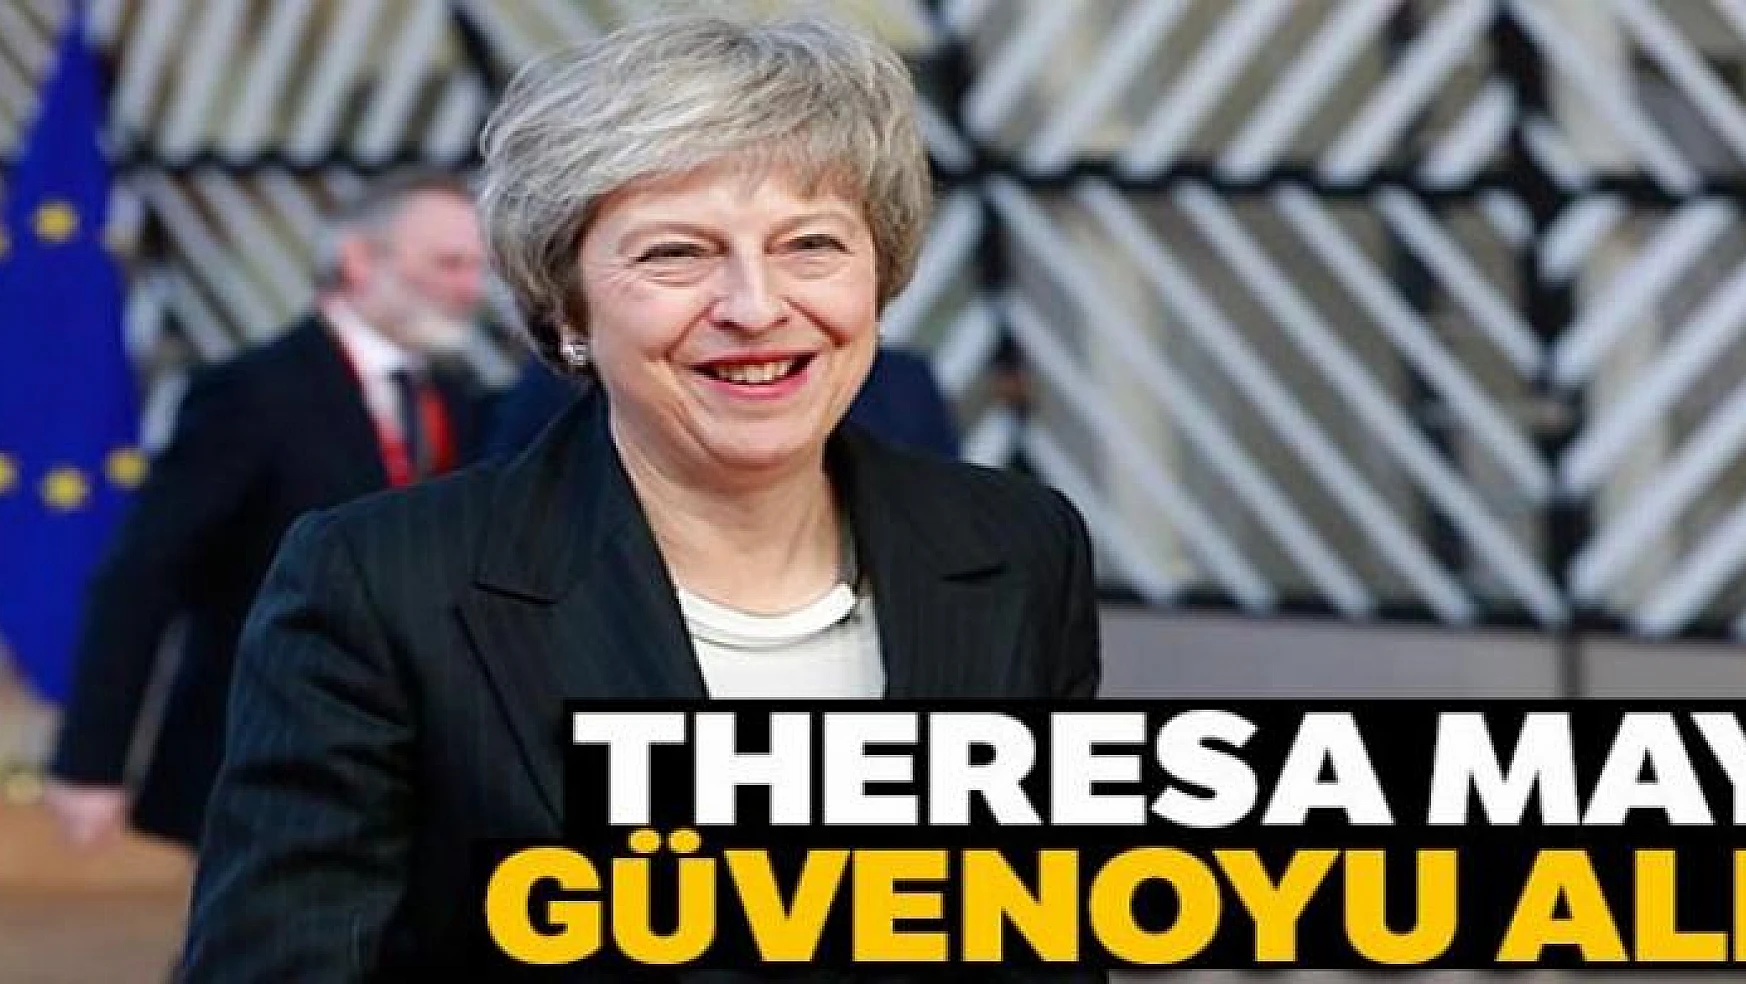 Theresa May parlamentodan güvenoyu aldı